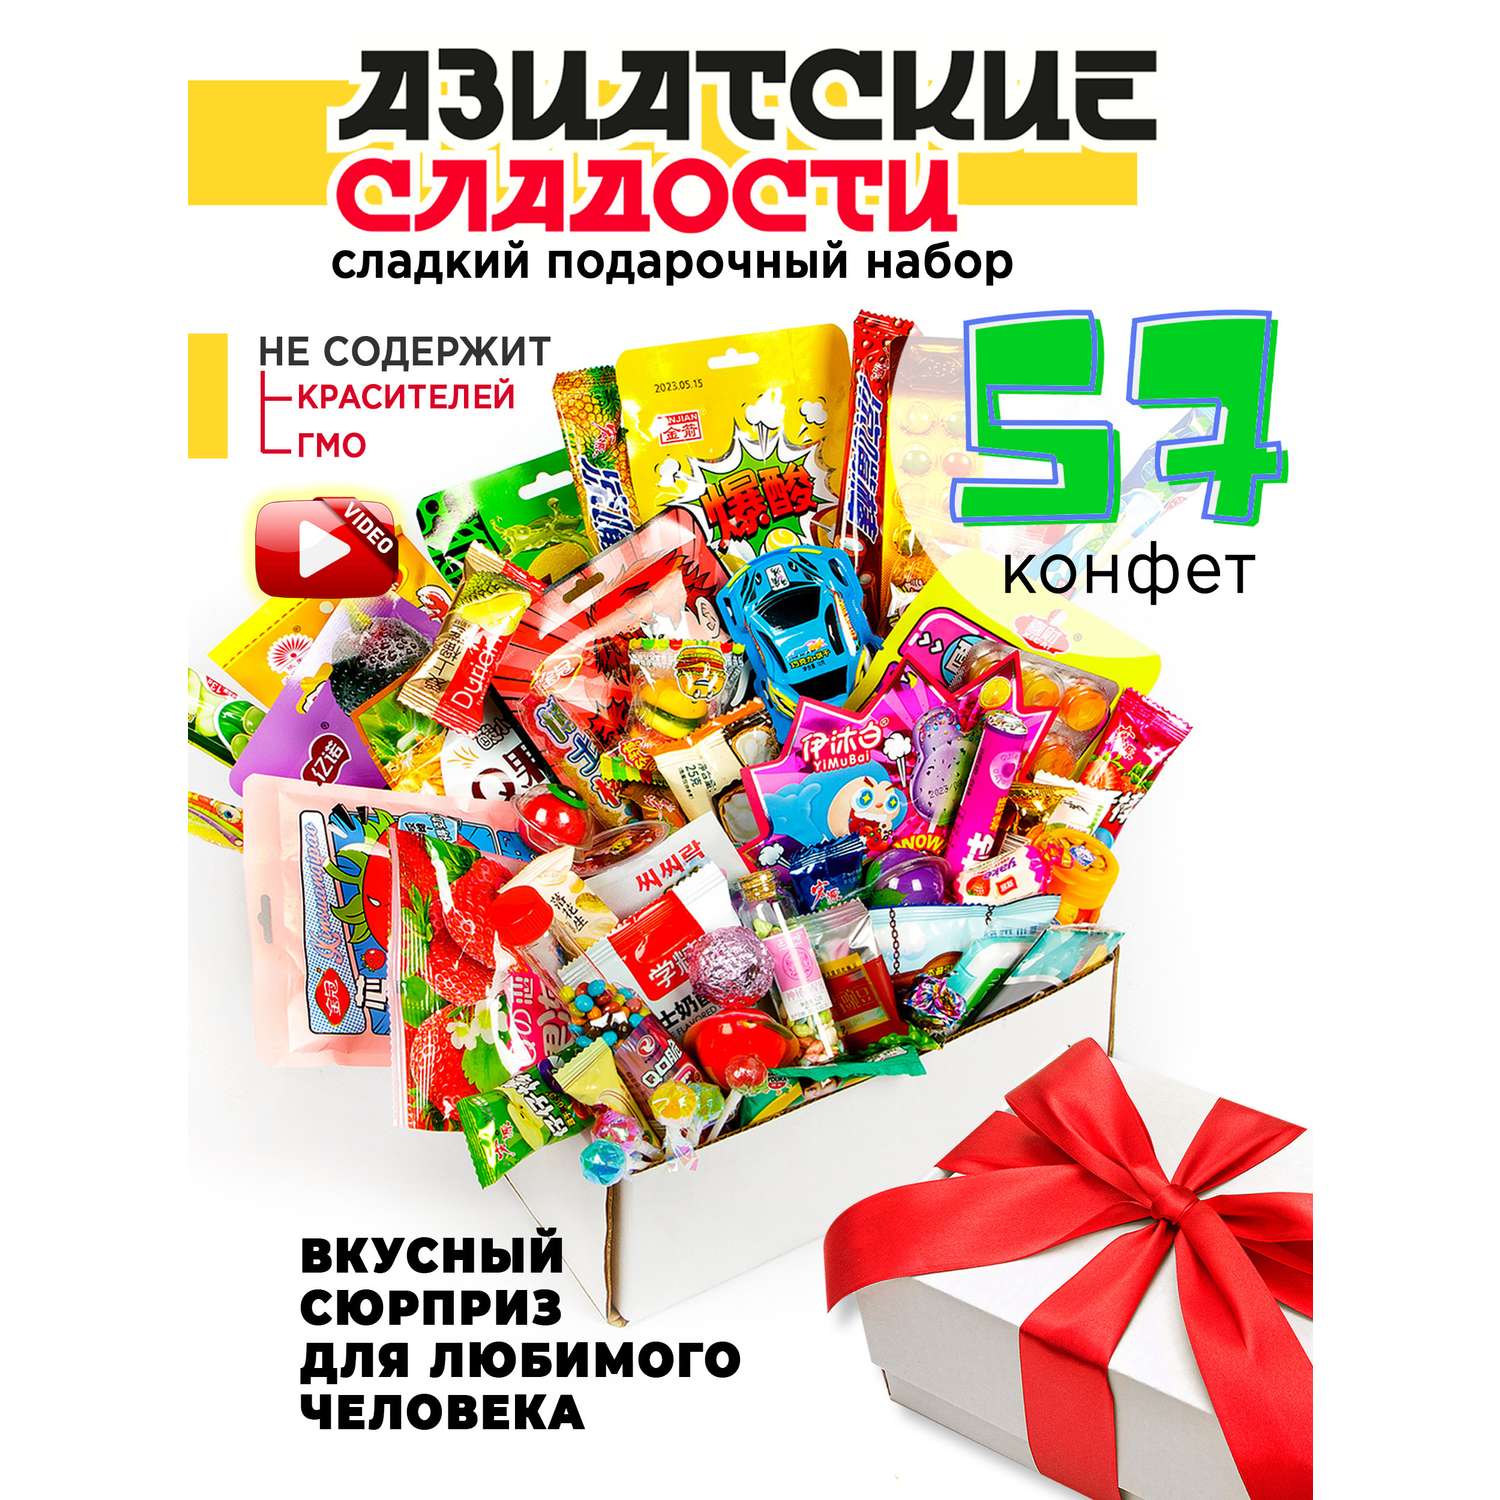 Сладкие подарки Москва-Сладкий подарок купить в Москве с бесплатной доставкой из kormstroytorg.ru